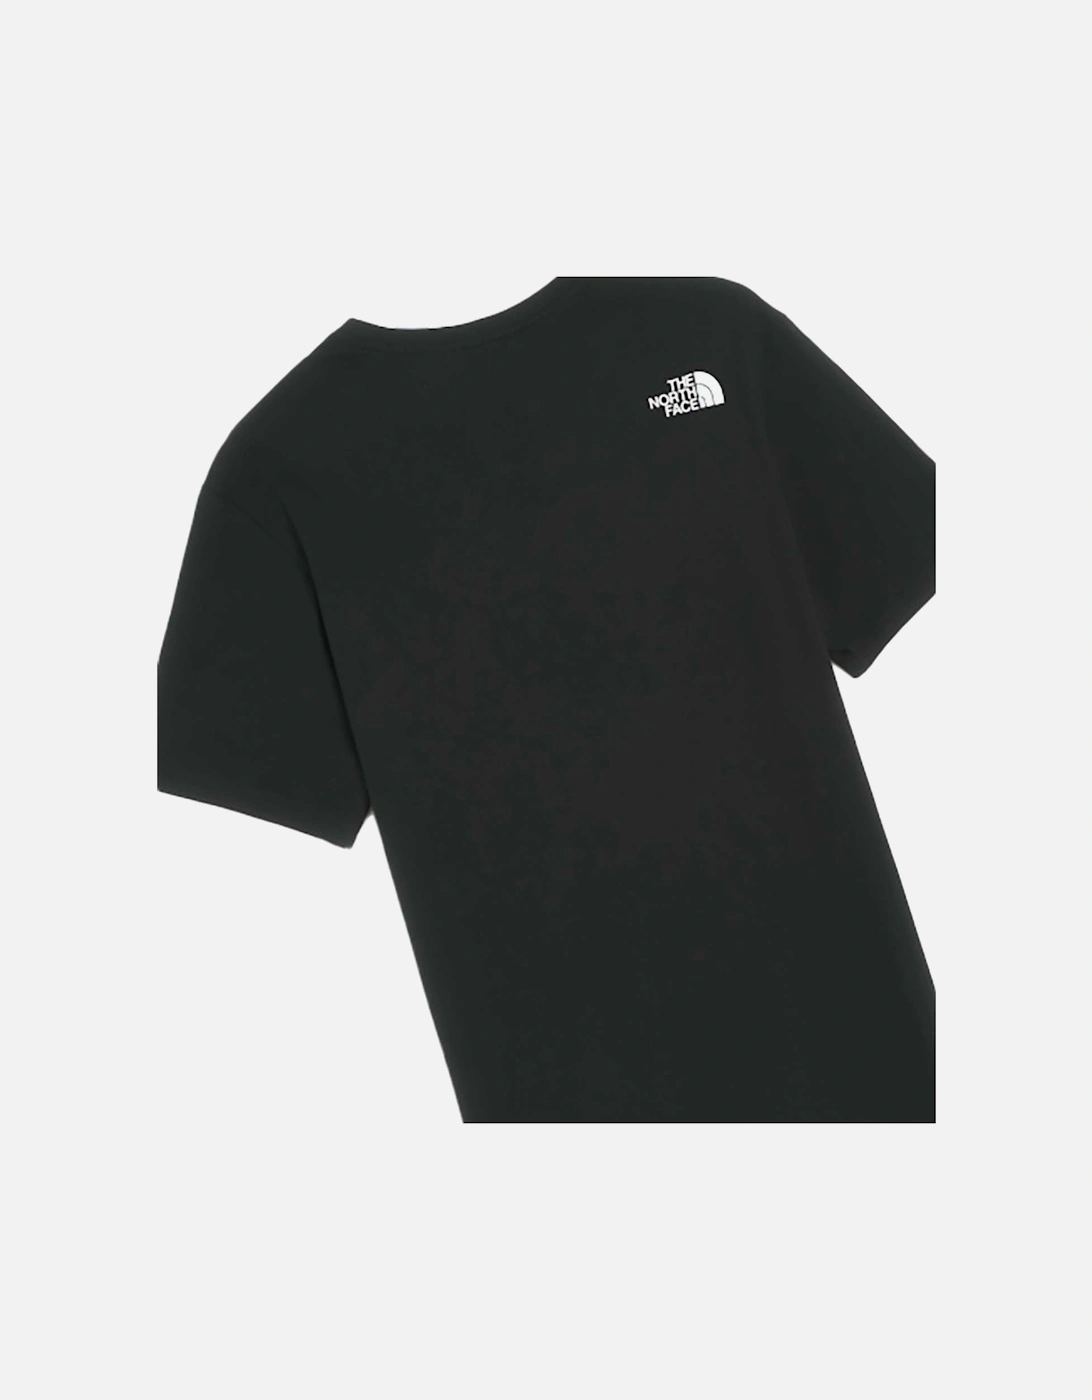 Berkeley California T-Shirt Black